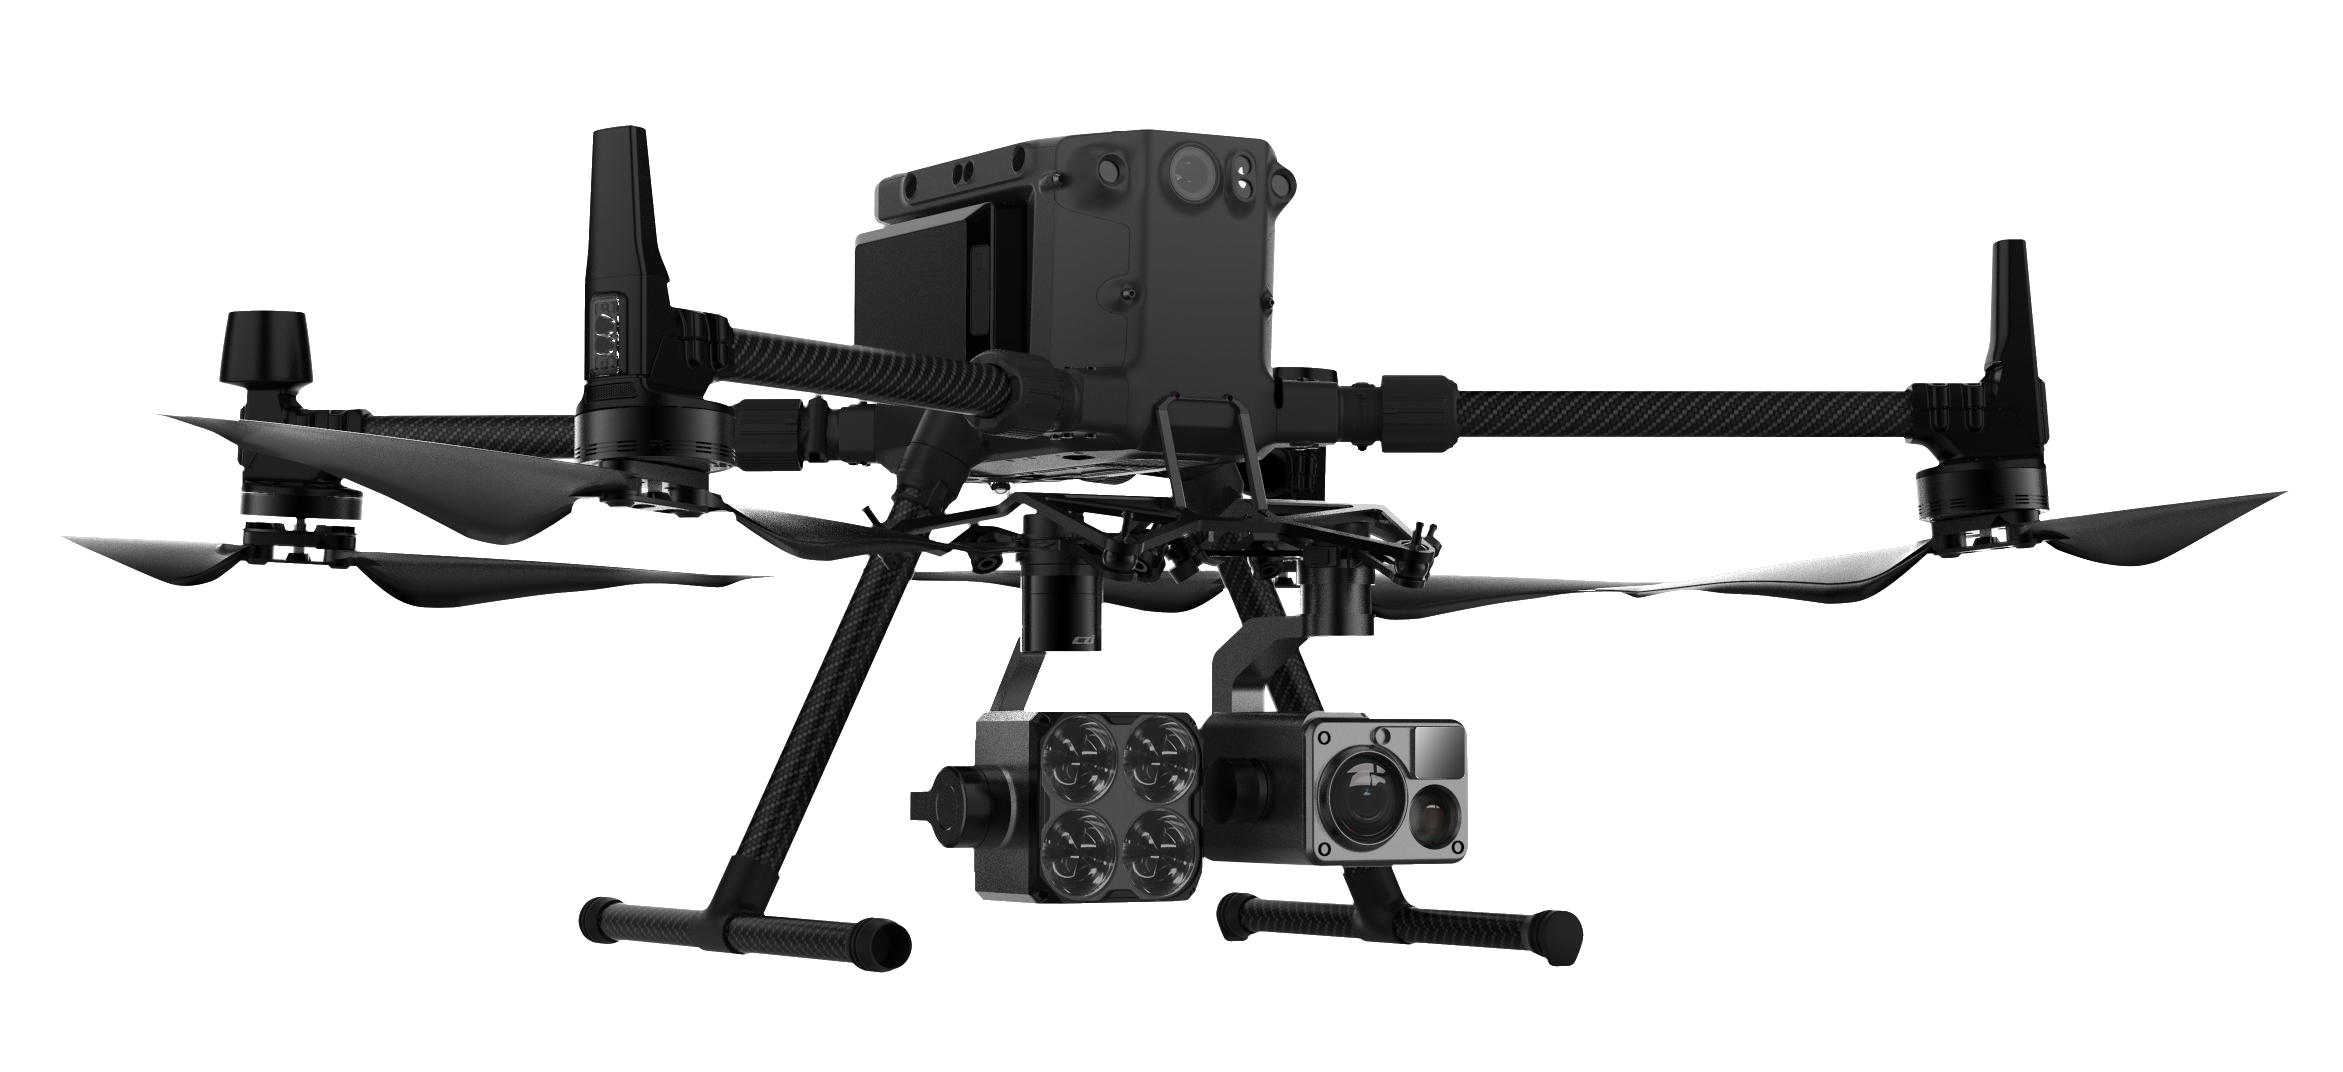 GL60 Plus DJI M300 drone spotlights